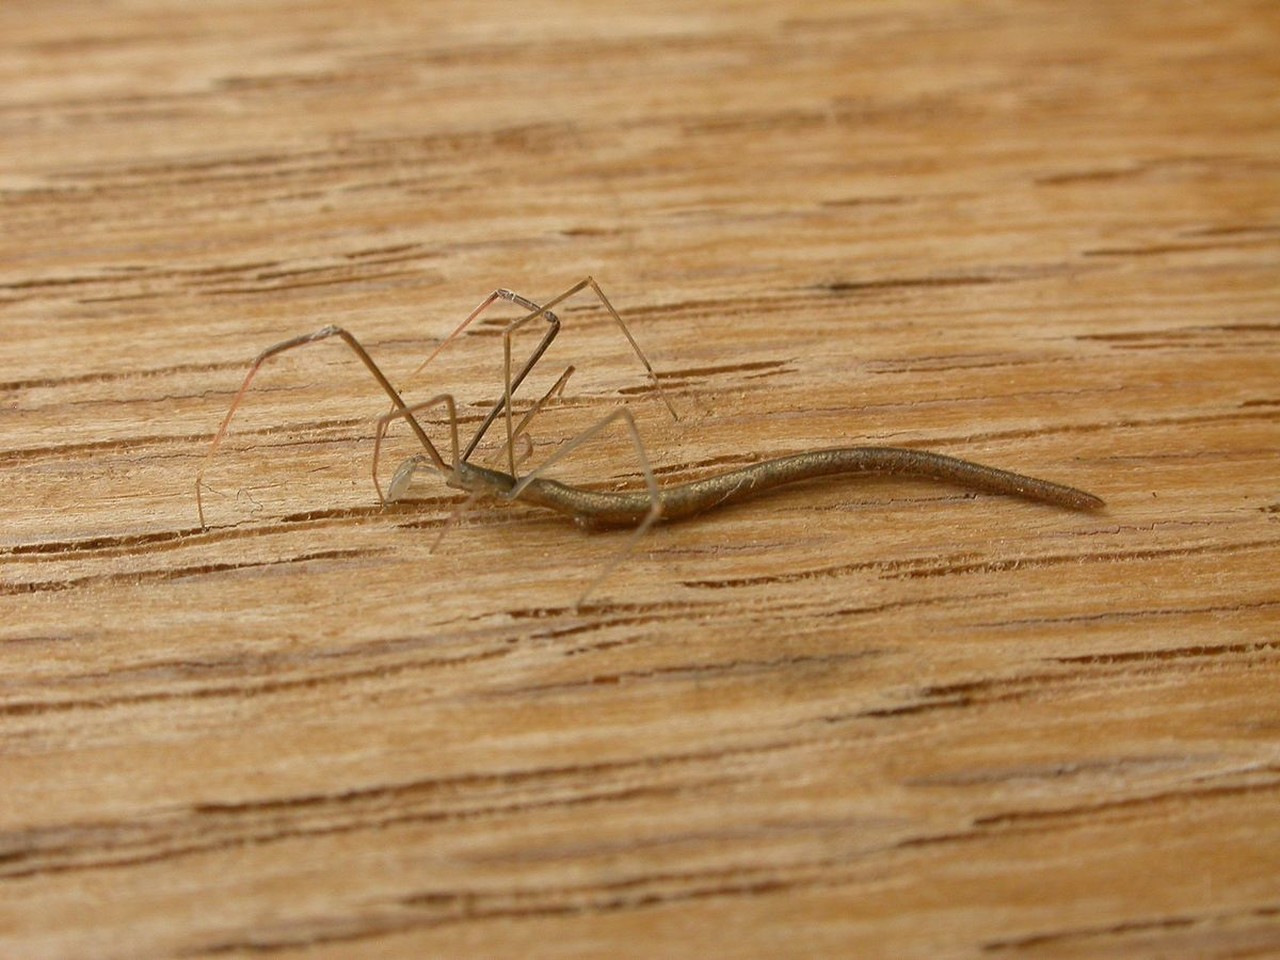 عدو من نوعه. عنكبوت على شكل يرقة غريبة تصطاد "إخوانها" بمهارةWhiplash Spider: